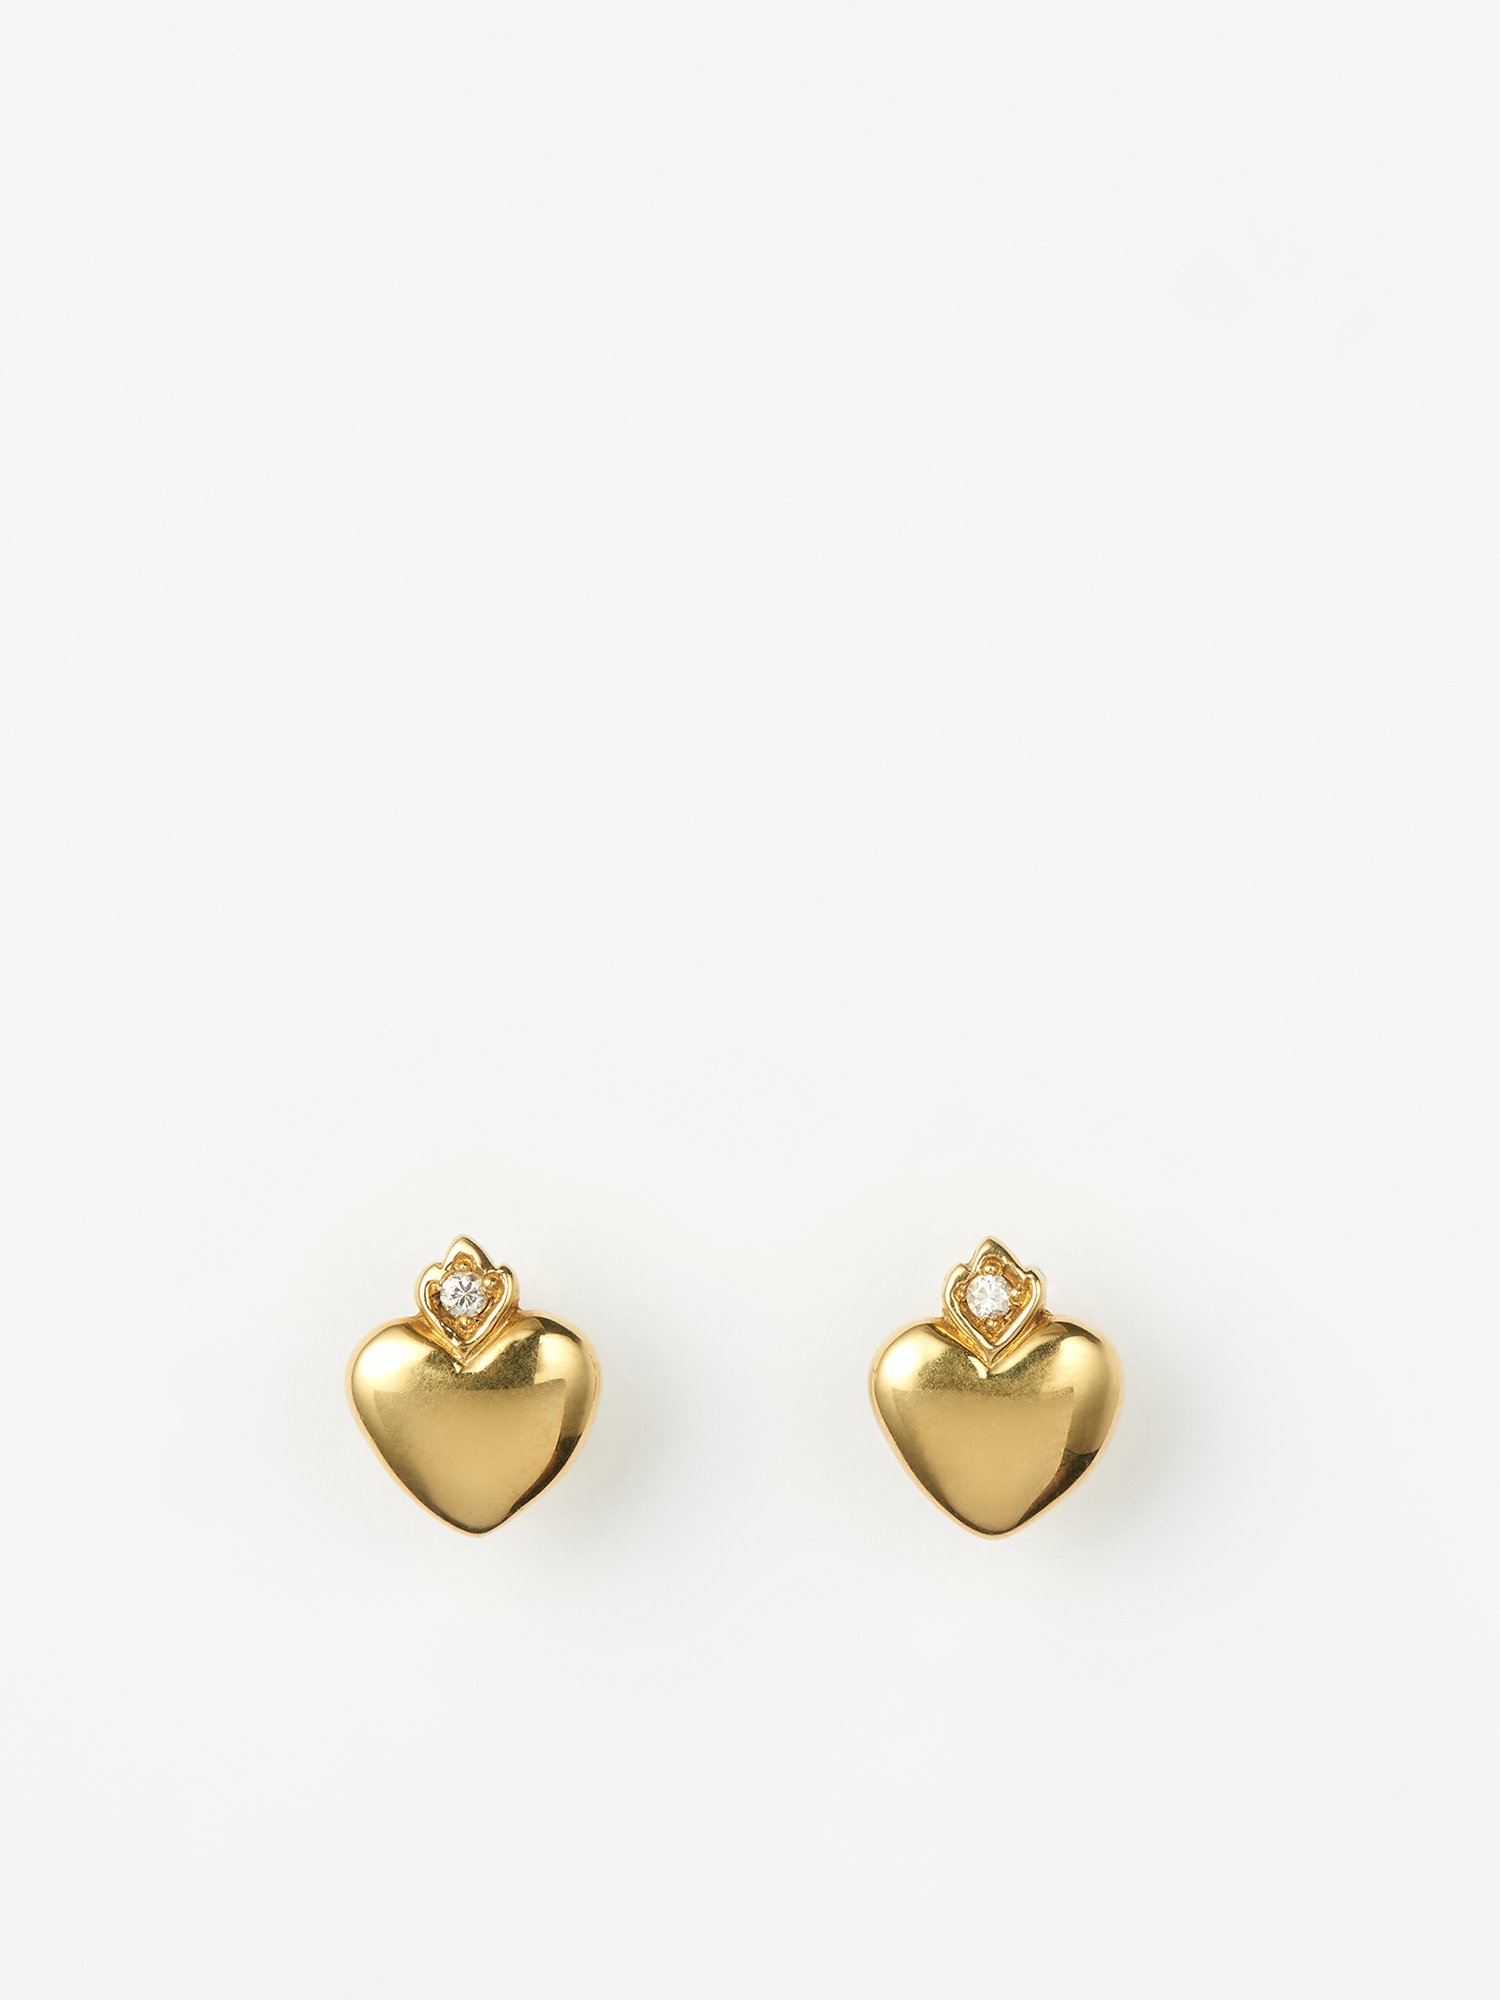 HELIOS / Old heart earrings